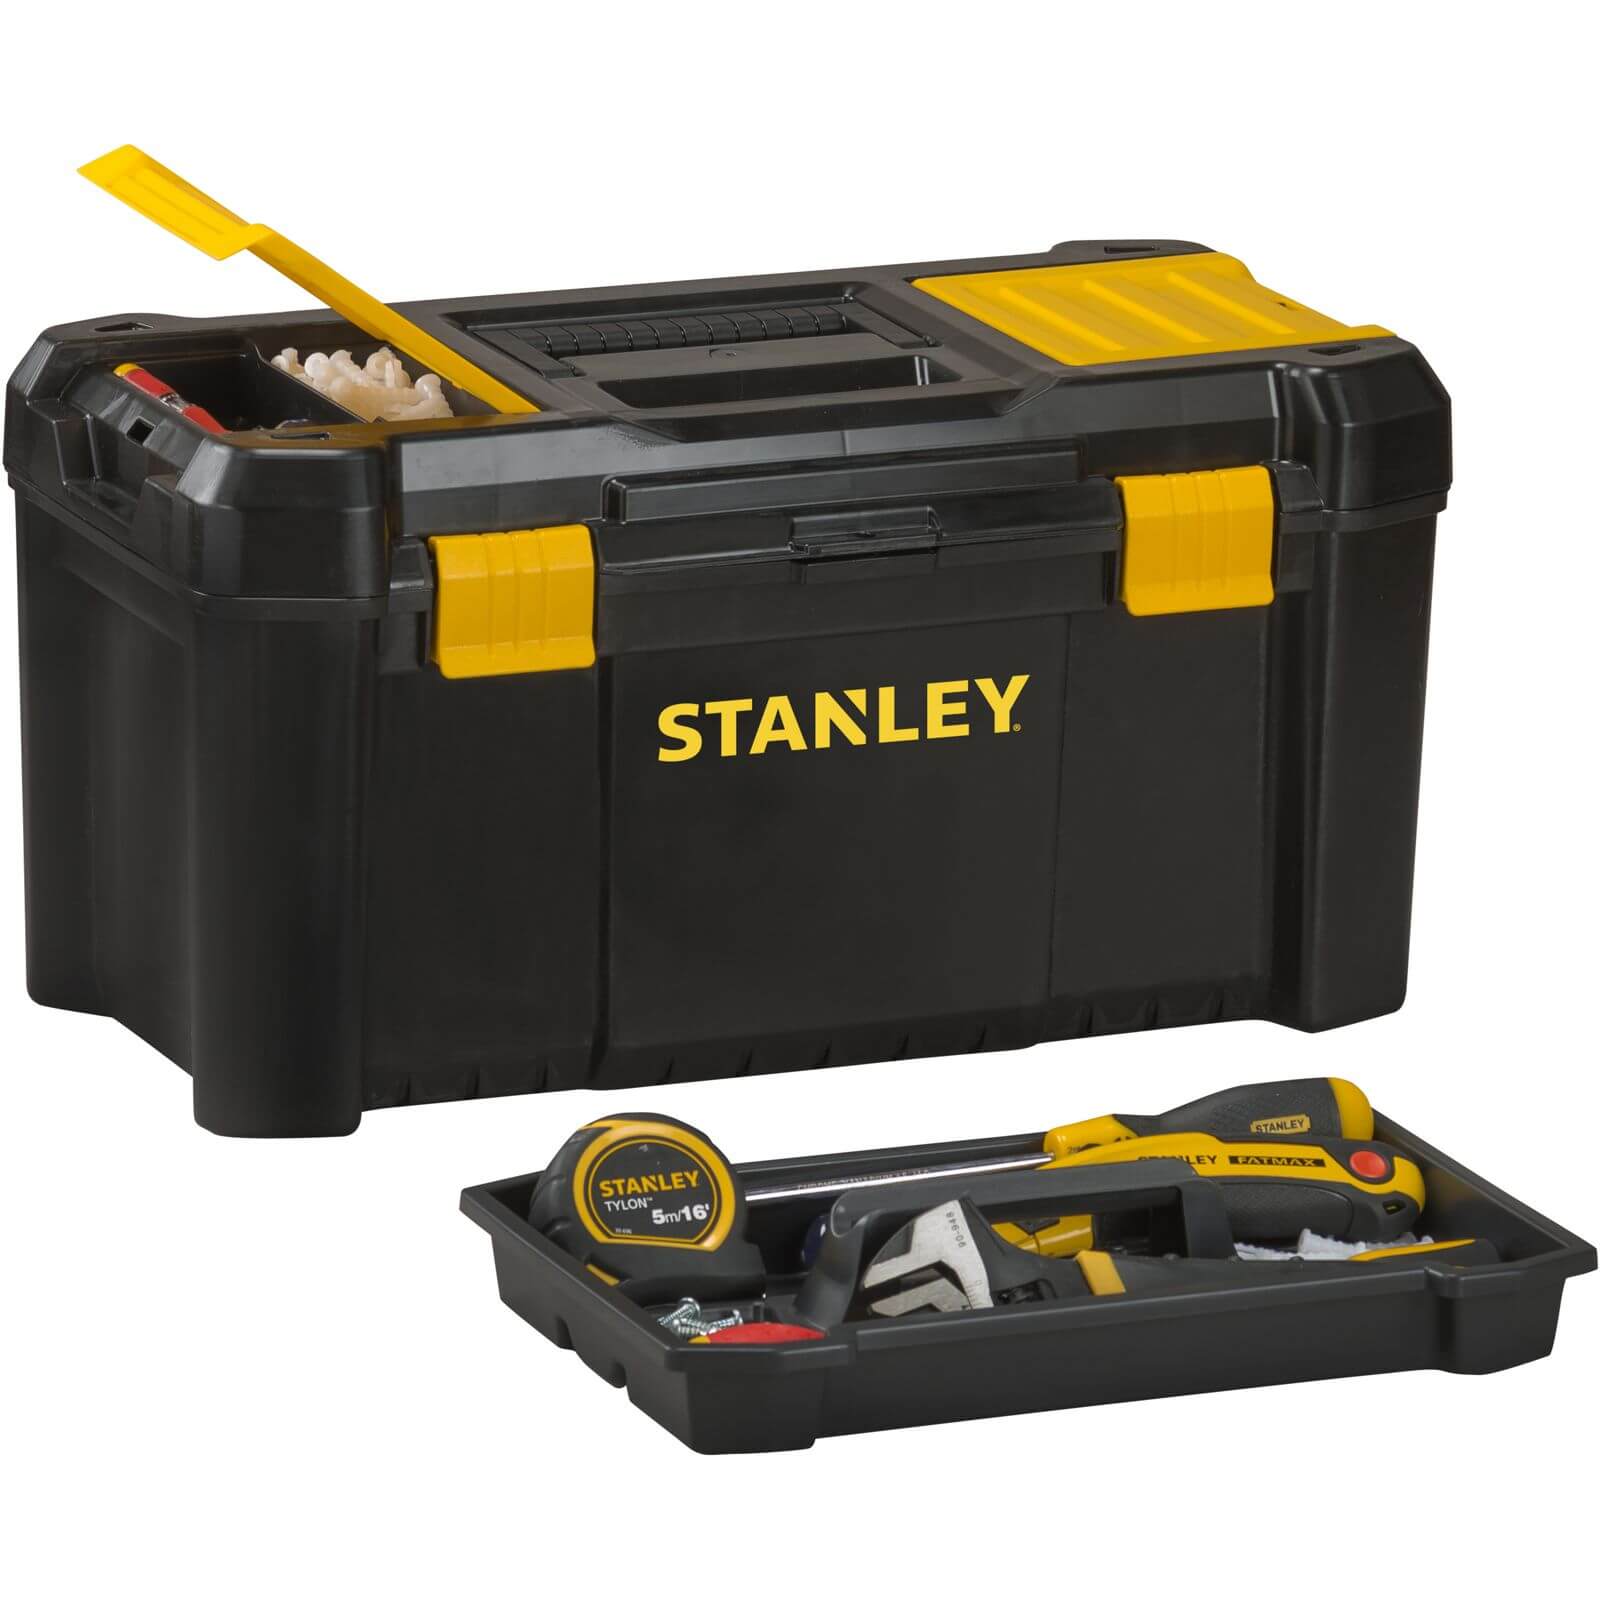 Stanley 19in Essential Toolbox